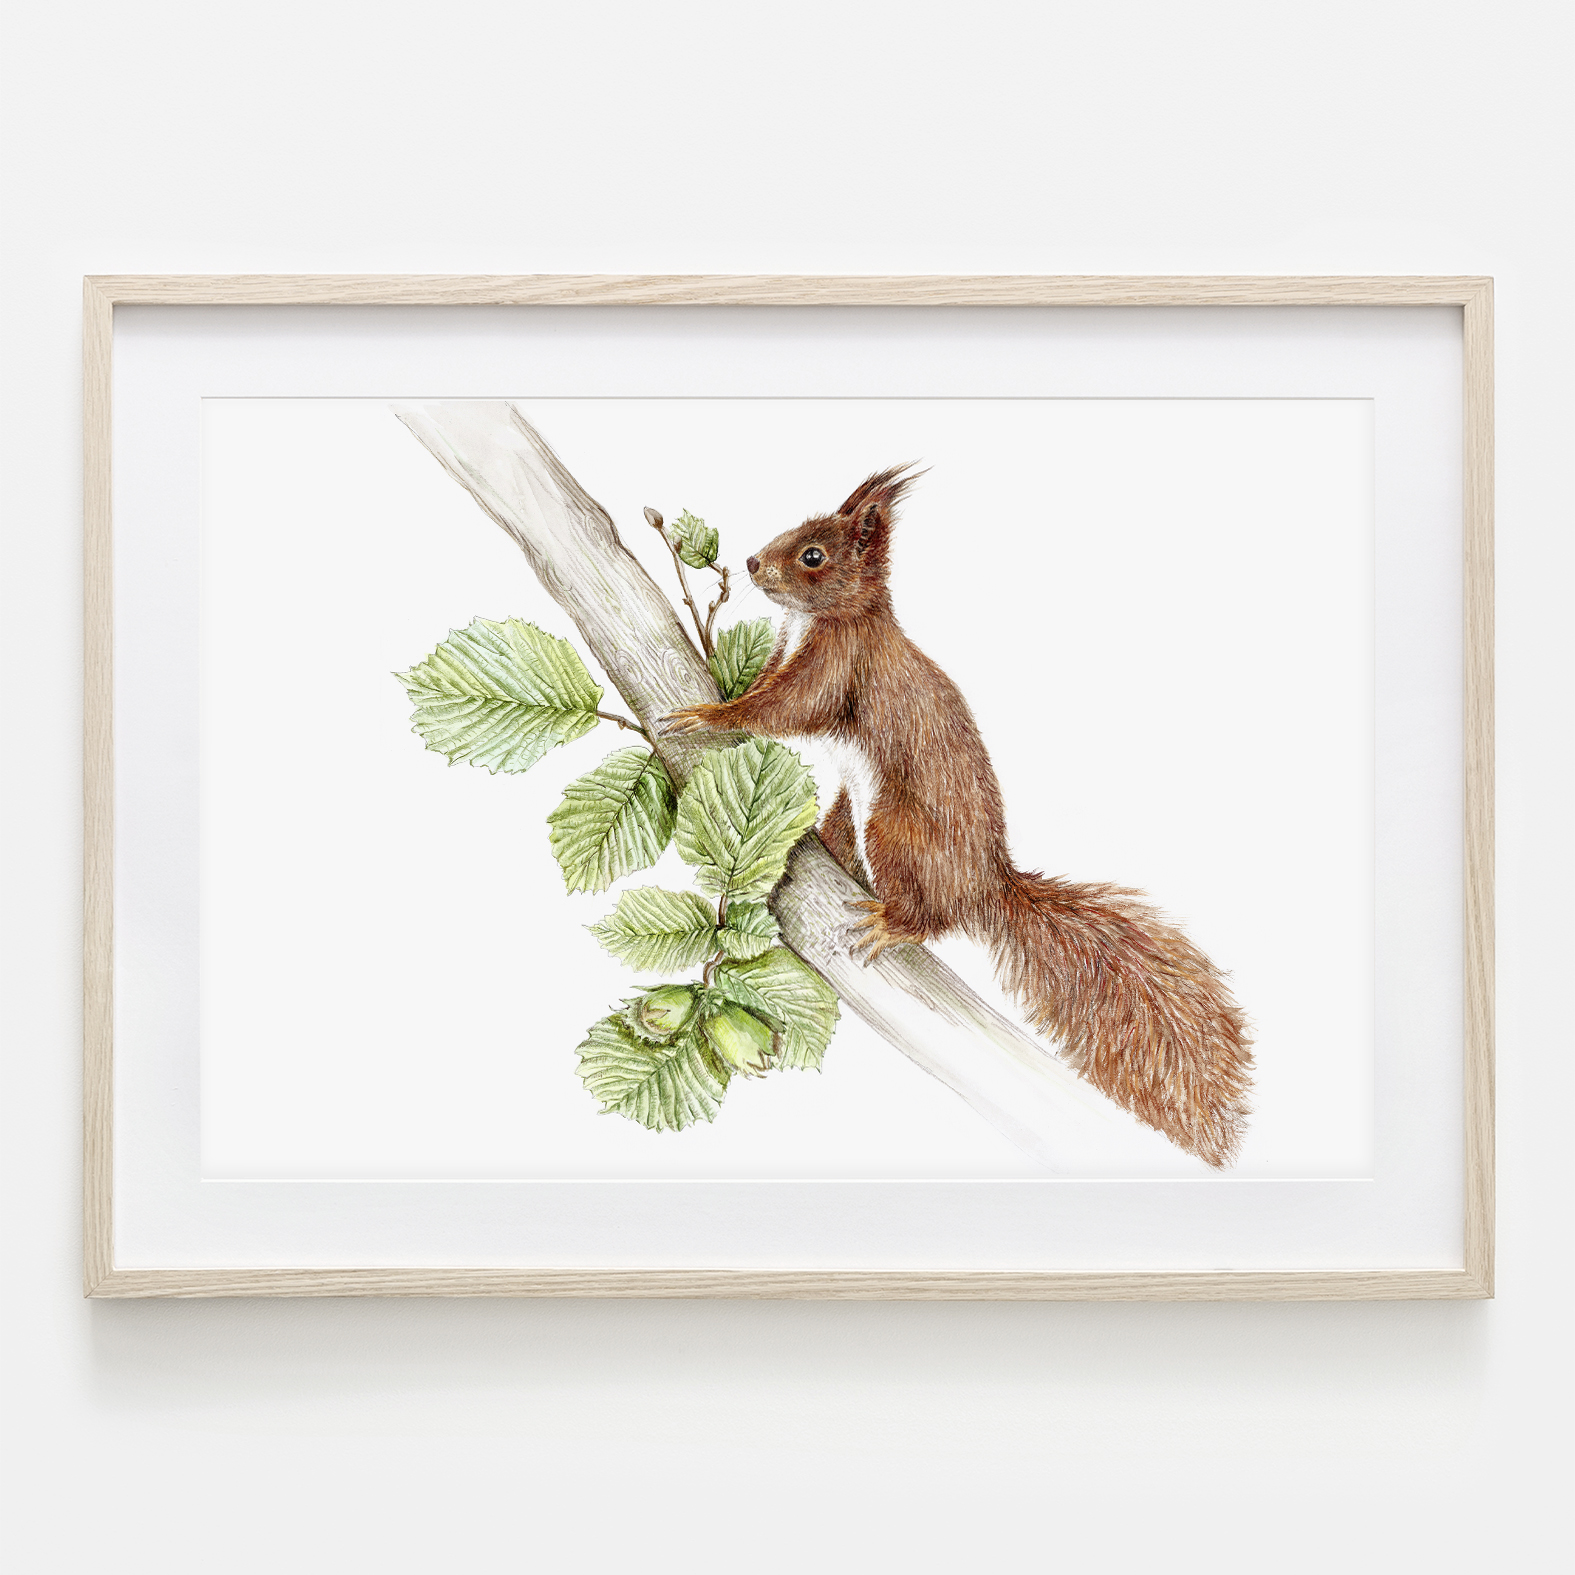 Eichhörnchen im Nussbaum, Fine Art Print, Giclée Print, Poster, Kunstdruck, Tier Zeichnung